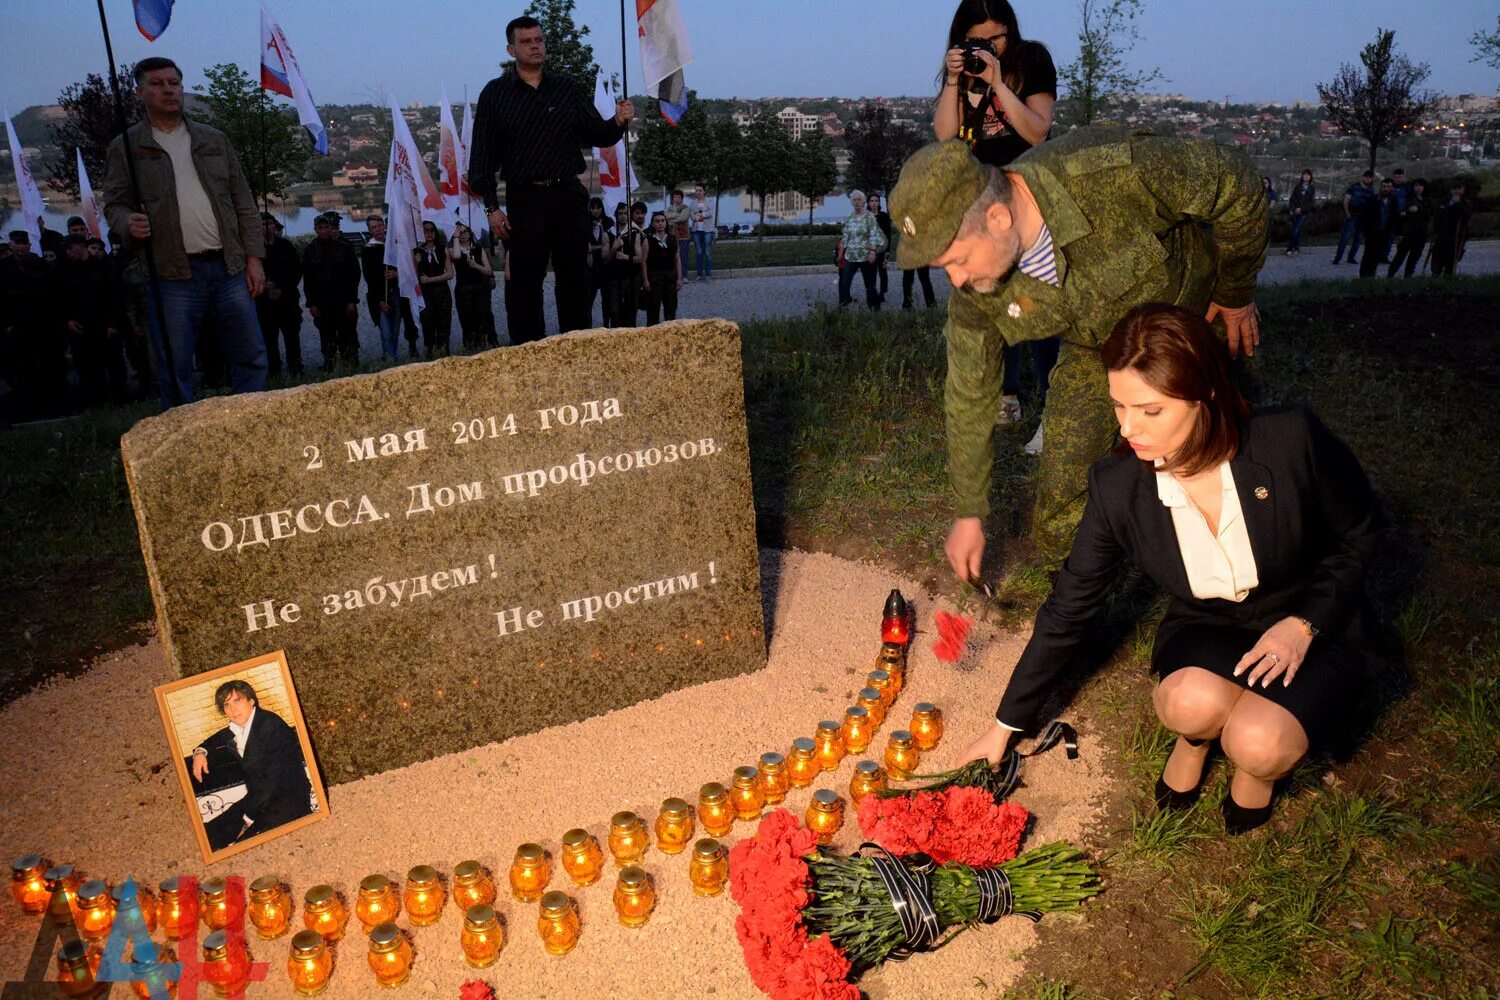 Сколько погибших в одессе. Одесская Хатынь 2 мая 2014. Погибшие в доме профсоюзов в Одессе. Памятник погибшим в Одессе в доме профсоюзов.